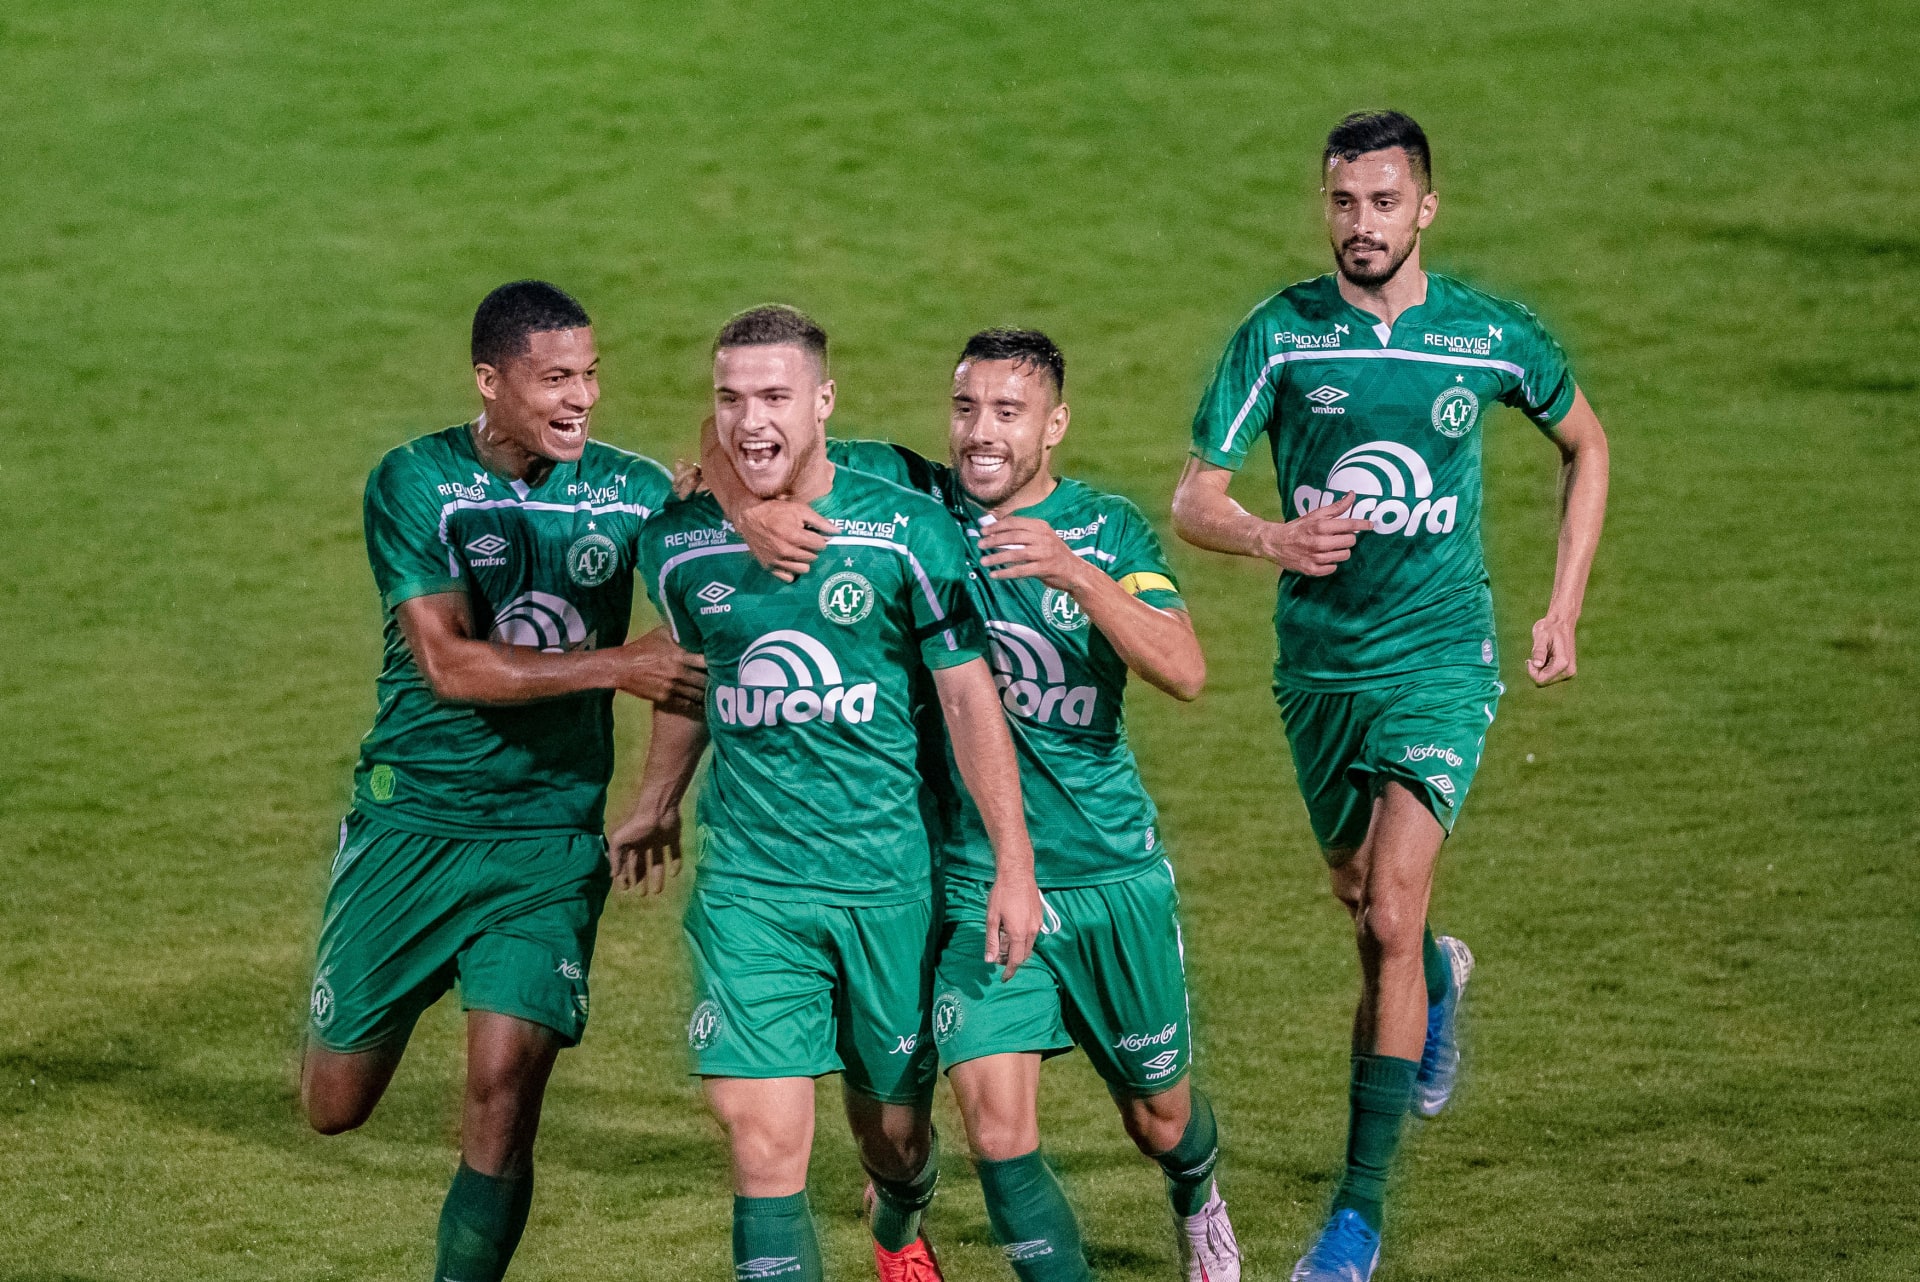 Fotbalisté Chapecoense se radují ze vstřeleného gólu během zápasu ve druhé lize.